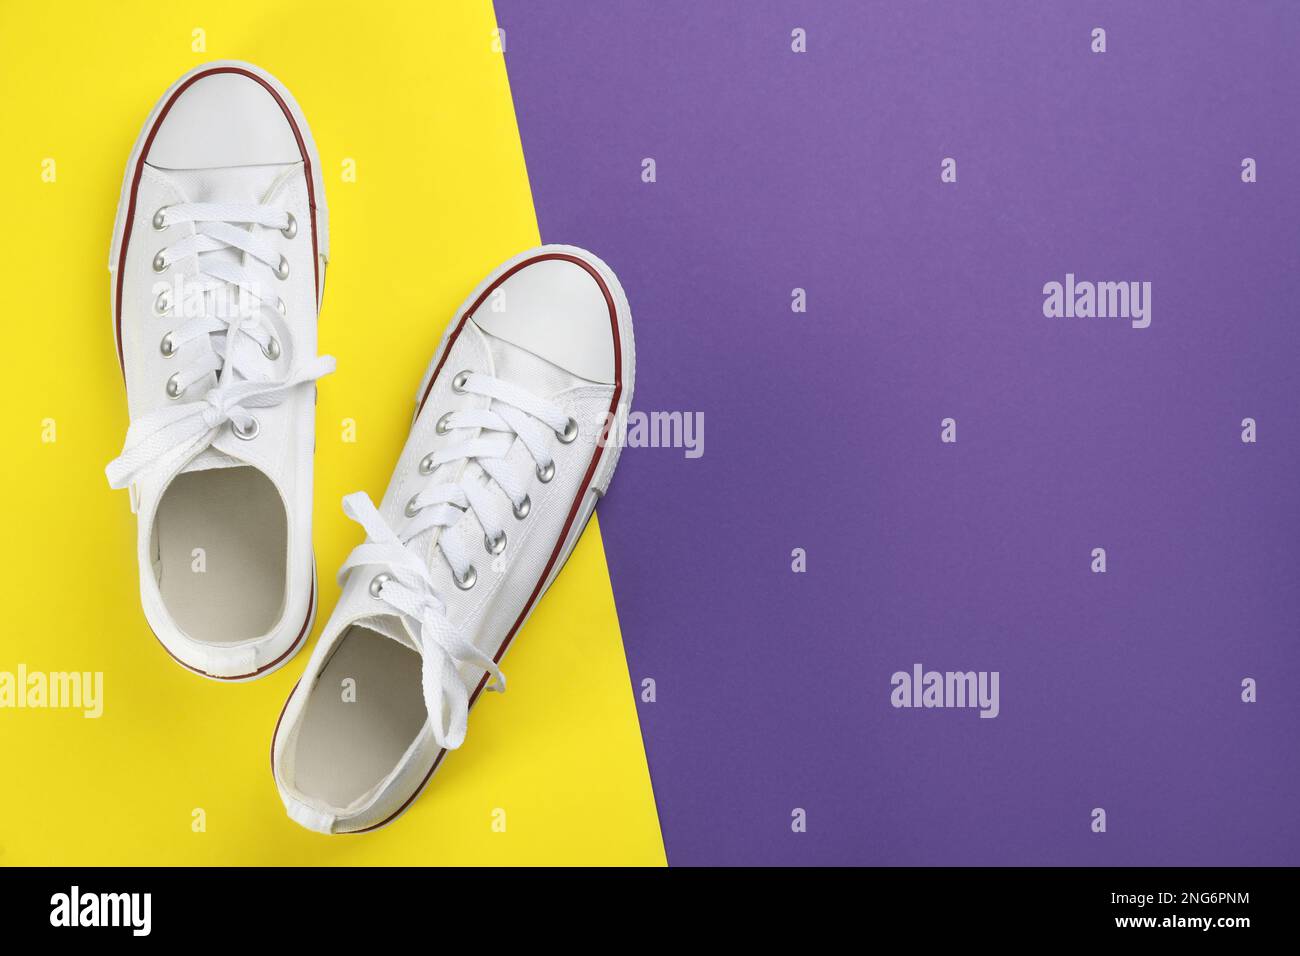 Stylische Sneakers auf farbigem Hintergrund, flach liegend. Platz für Text  Stockfotografie - Alamy